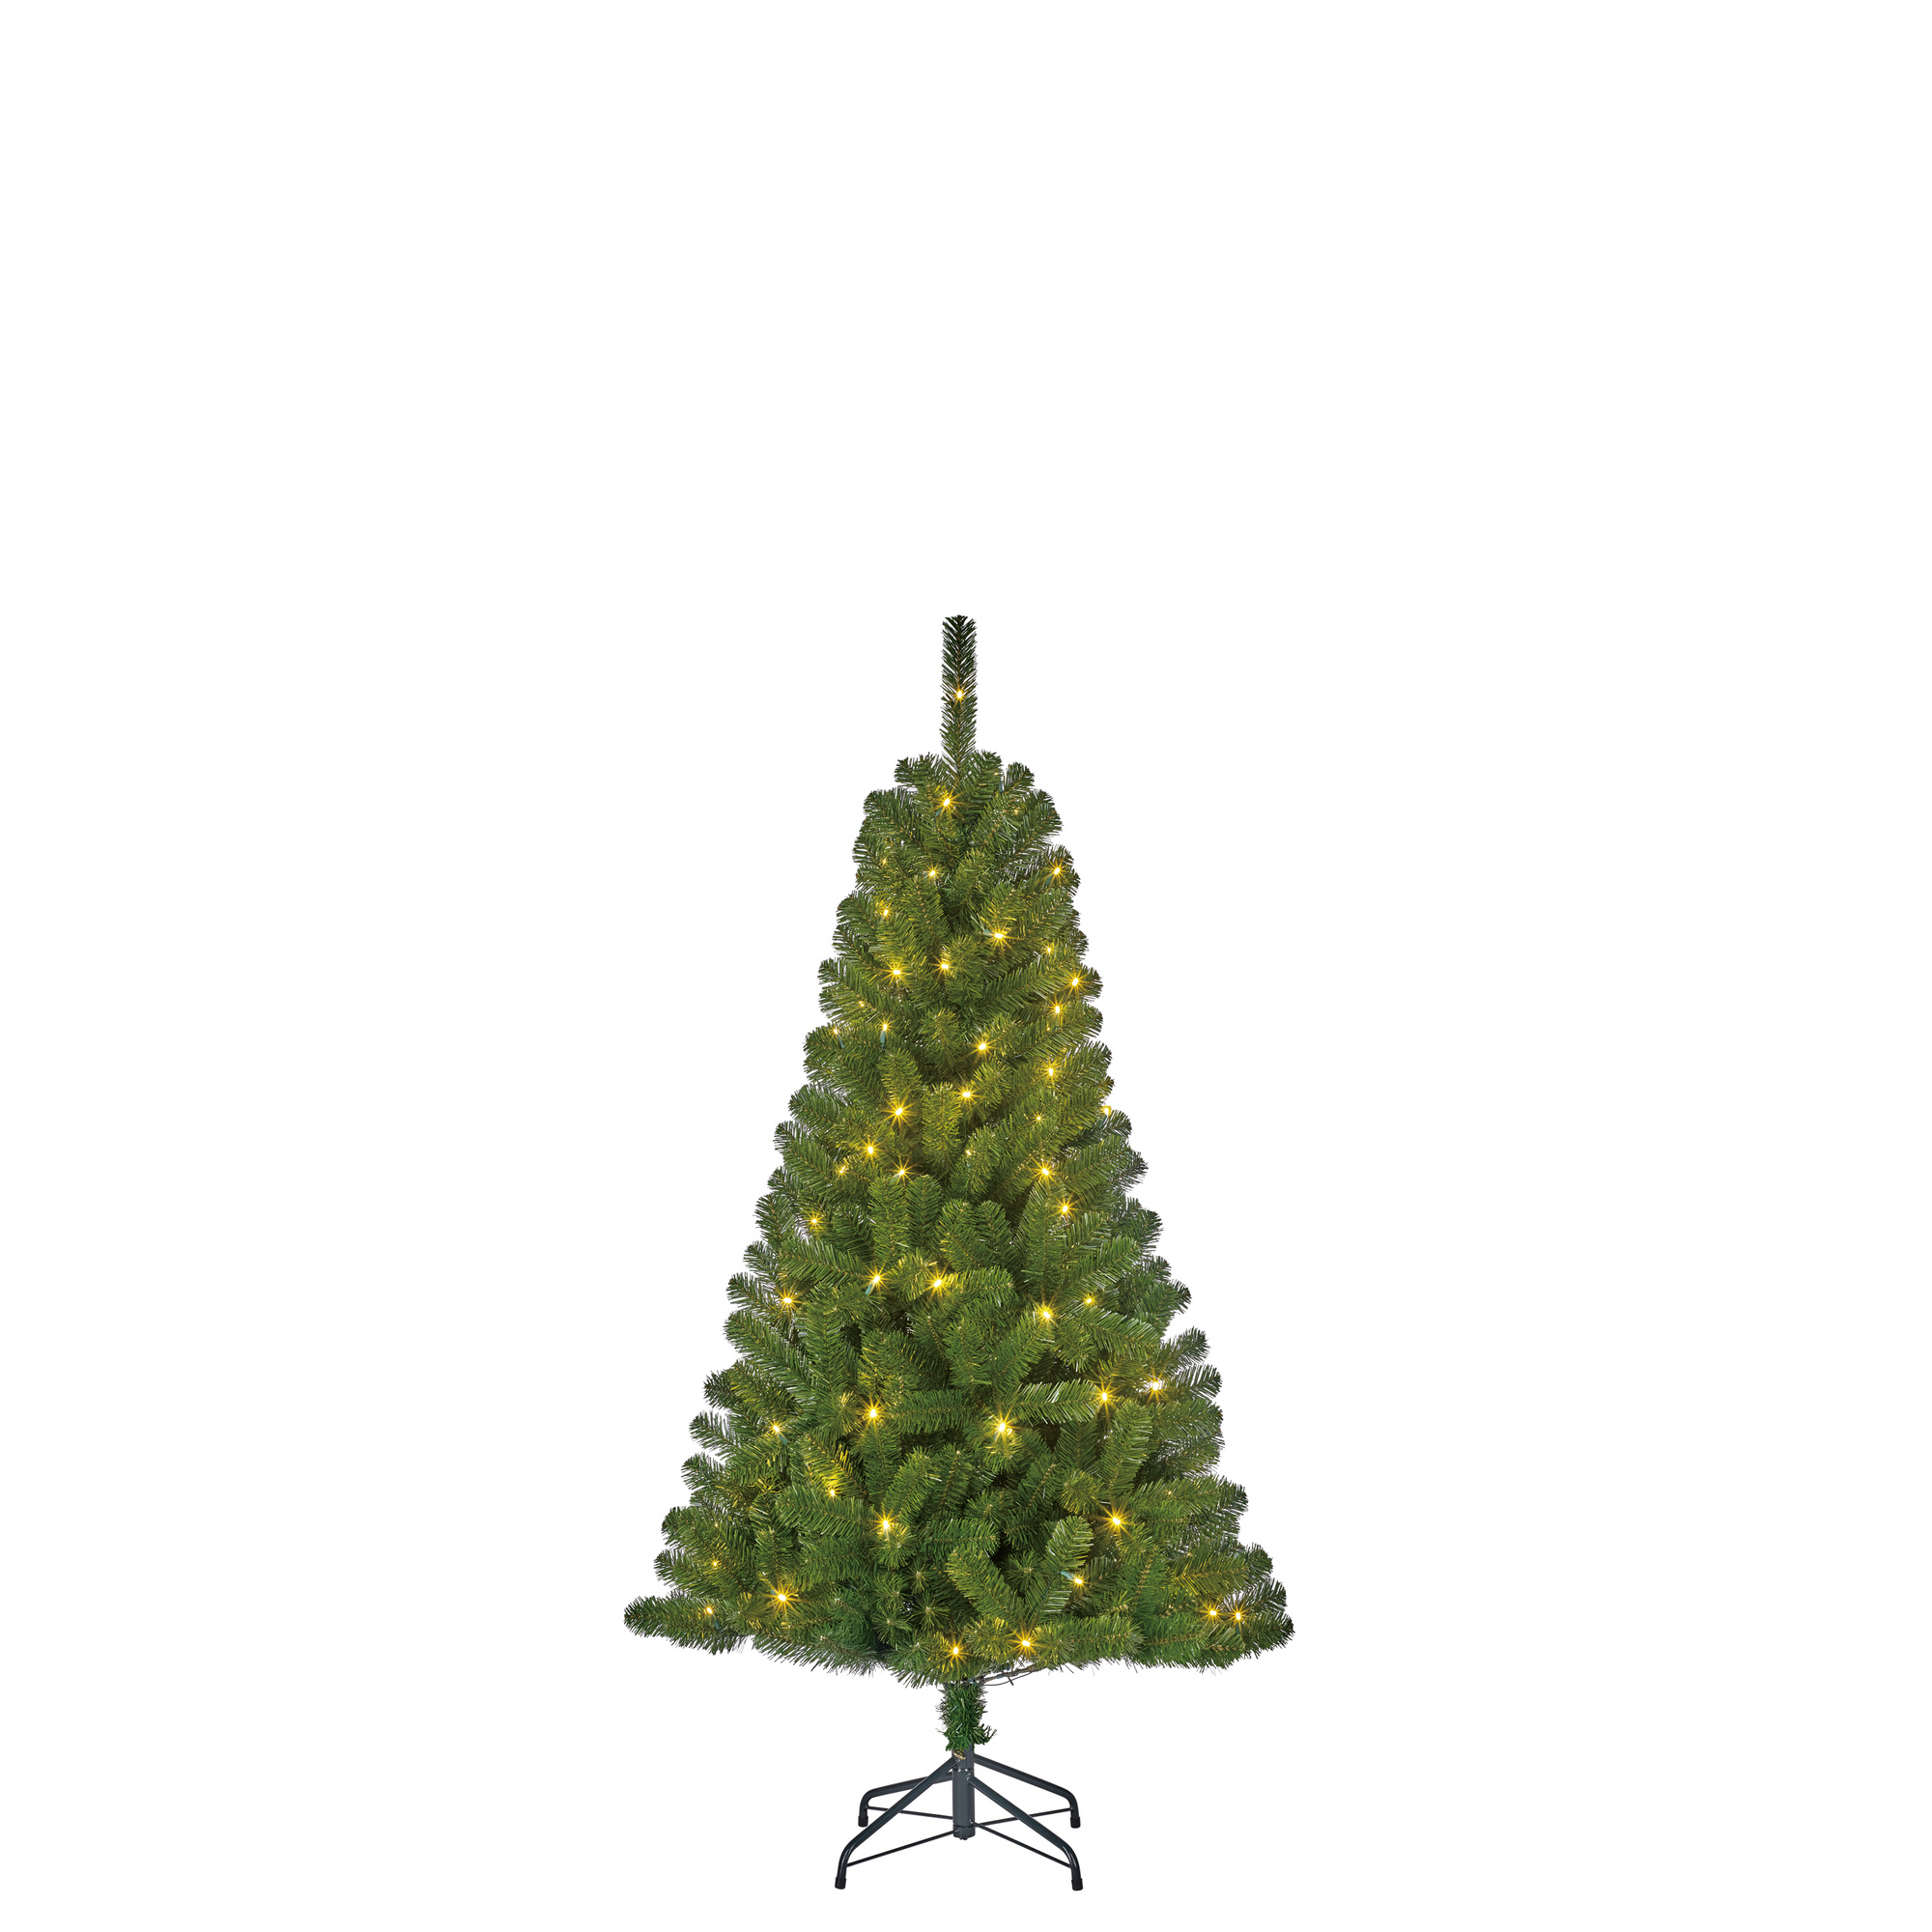 Künstlicher Weihnachtsbaum 'Charlton' grün 120 cm, mit LED-Beleuchtung + product picture